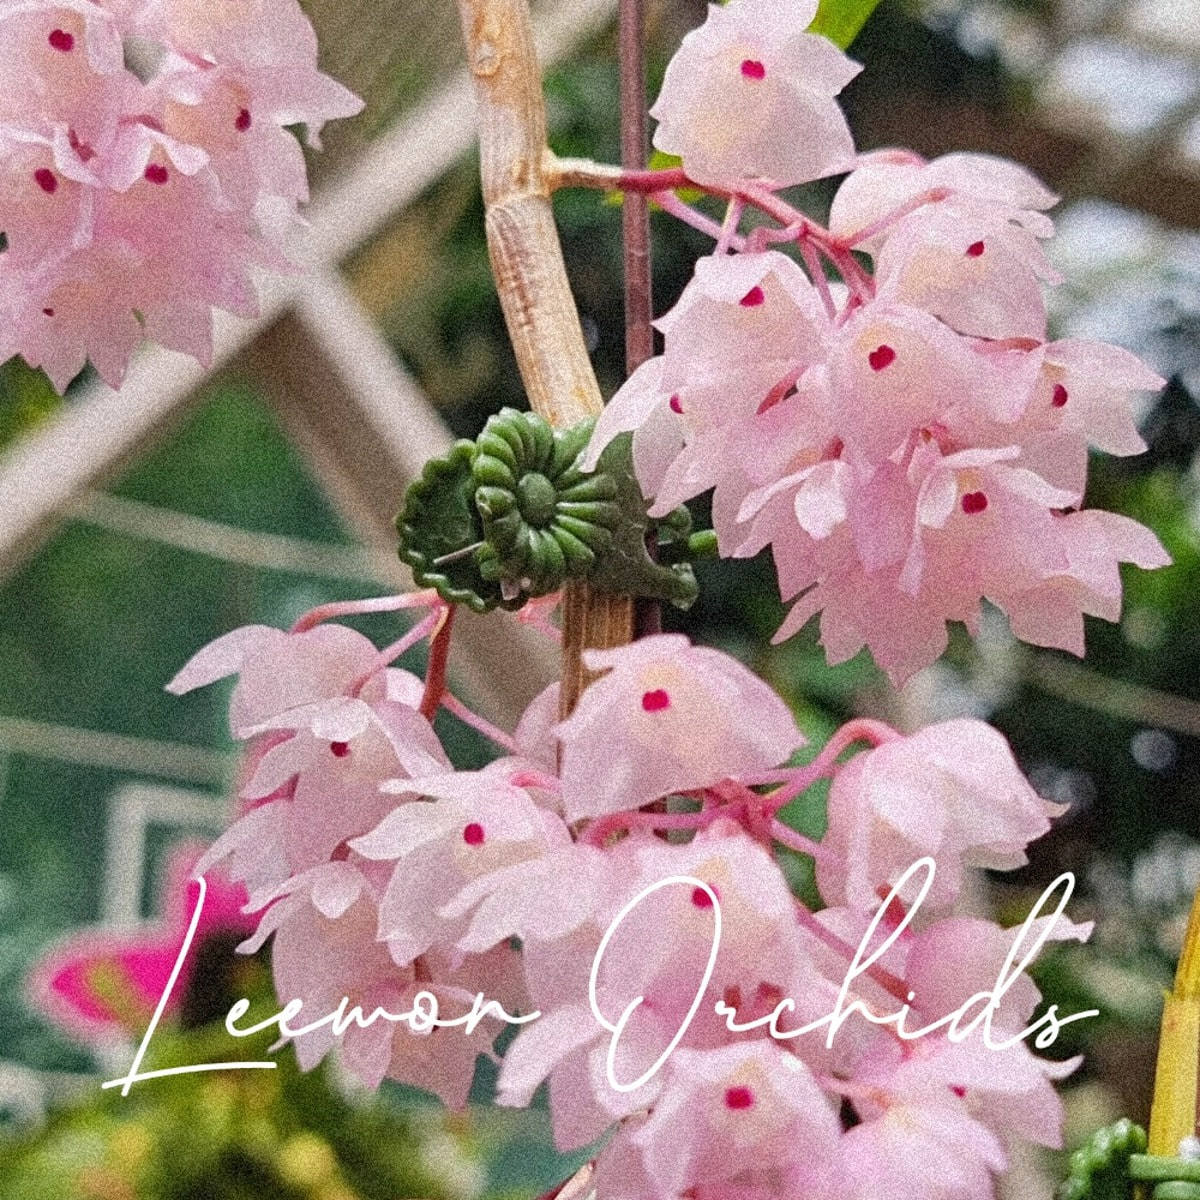 덴드로비움 링규엘라 Dendrobium linguella (꽃대O 특대품/온라인 한정재고: 1)